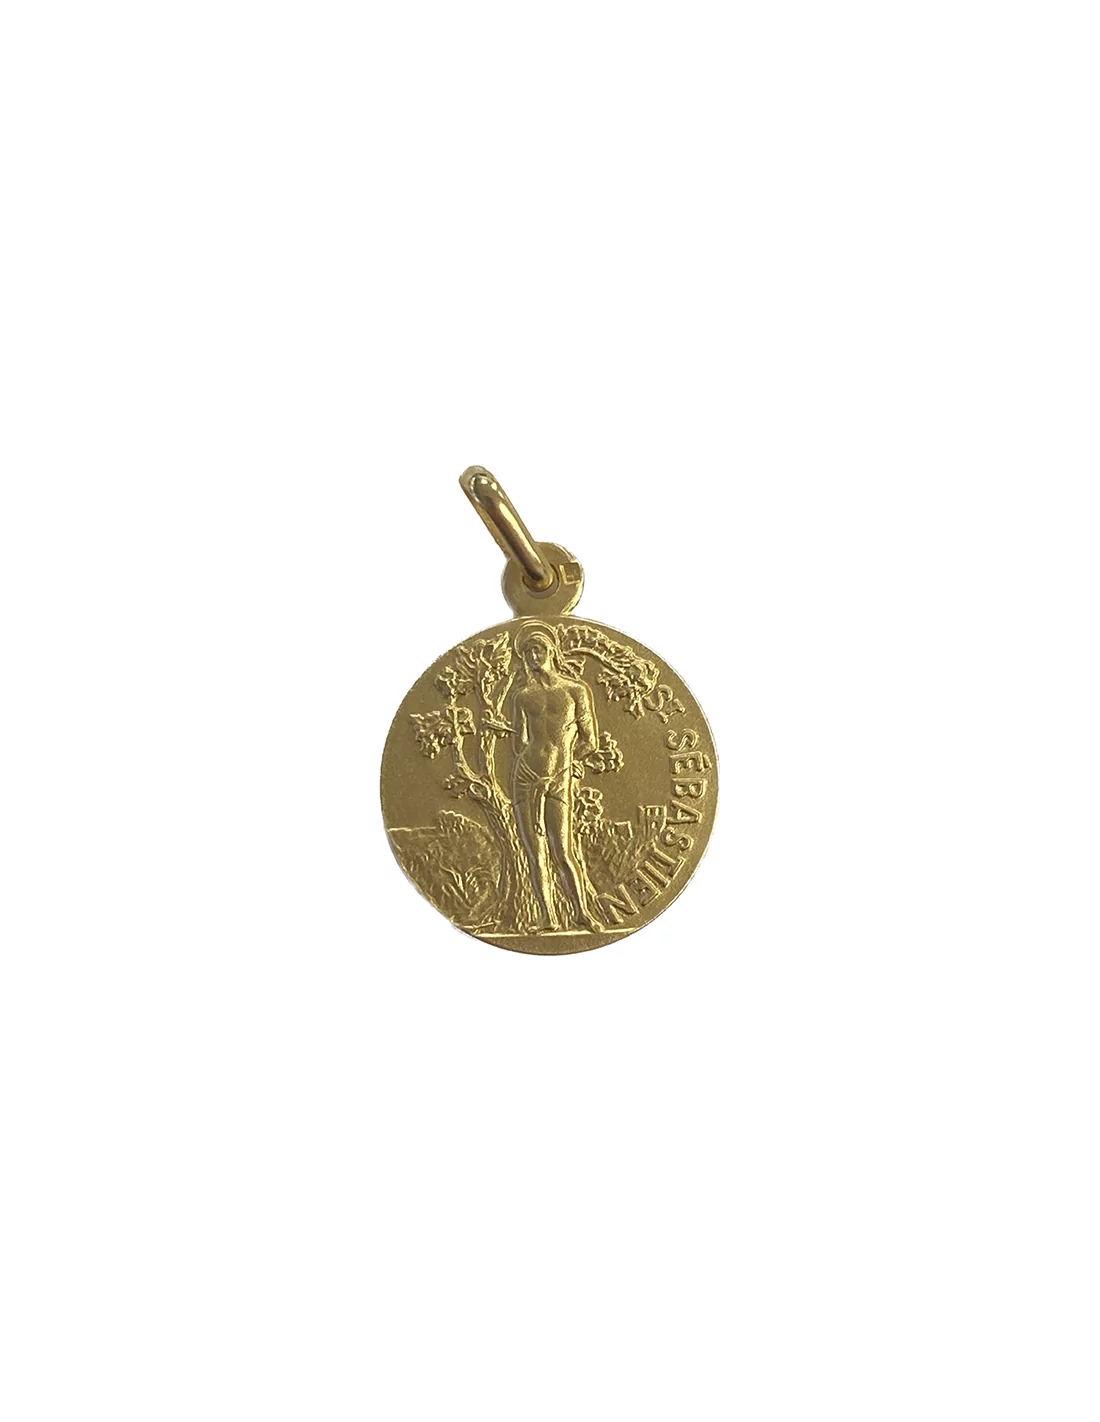 Une Médaille D'or Avec Une étoile Dessus Est Accrochée à Un Mur En